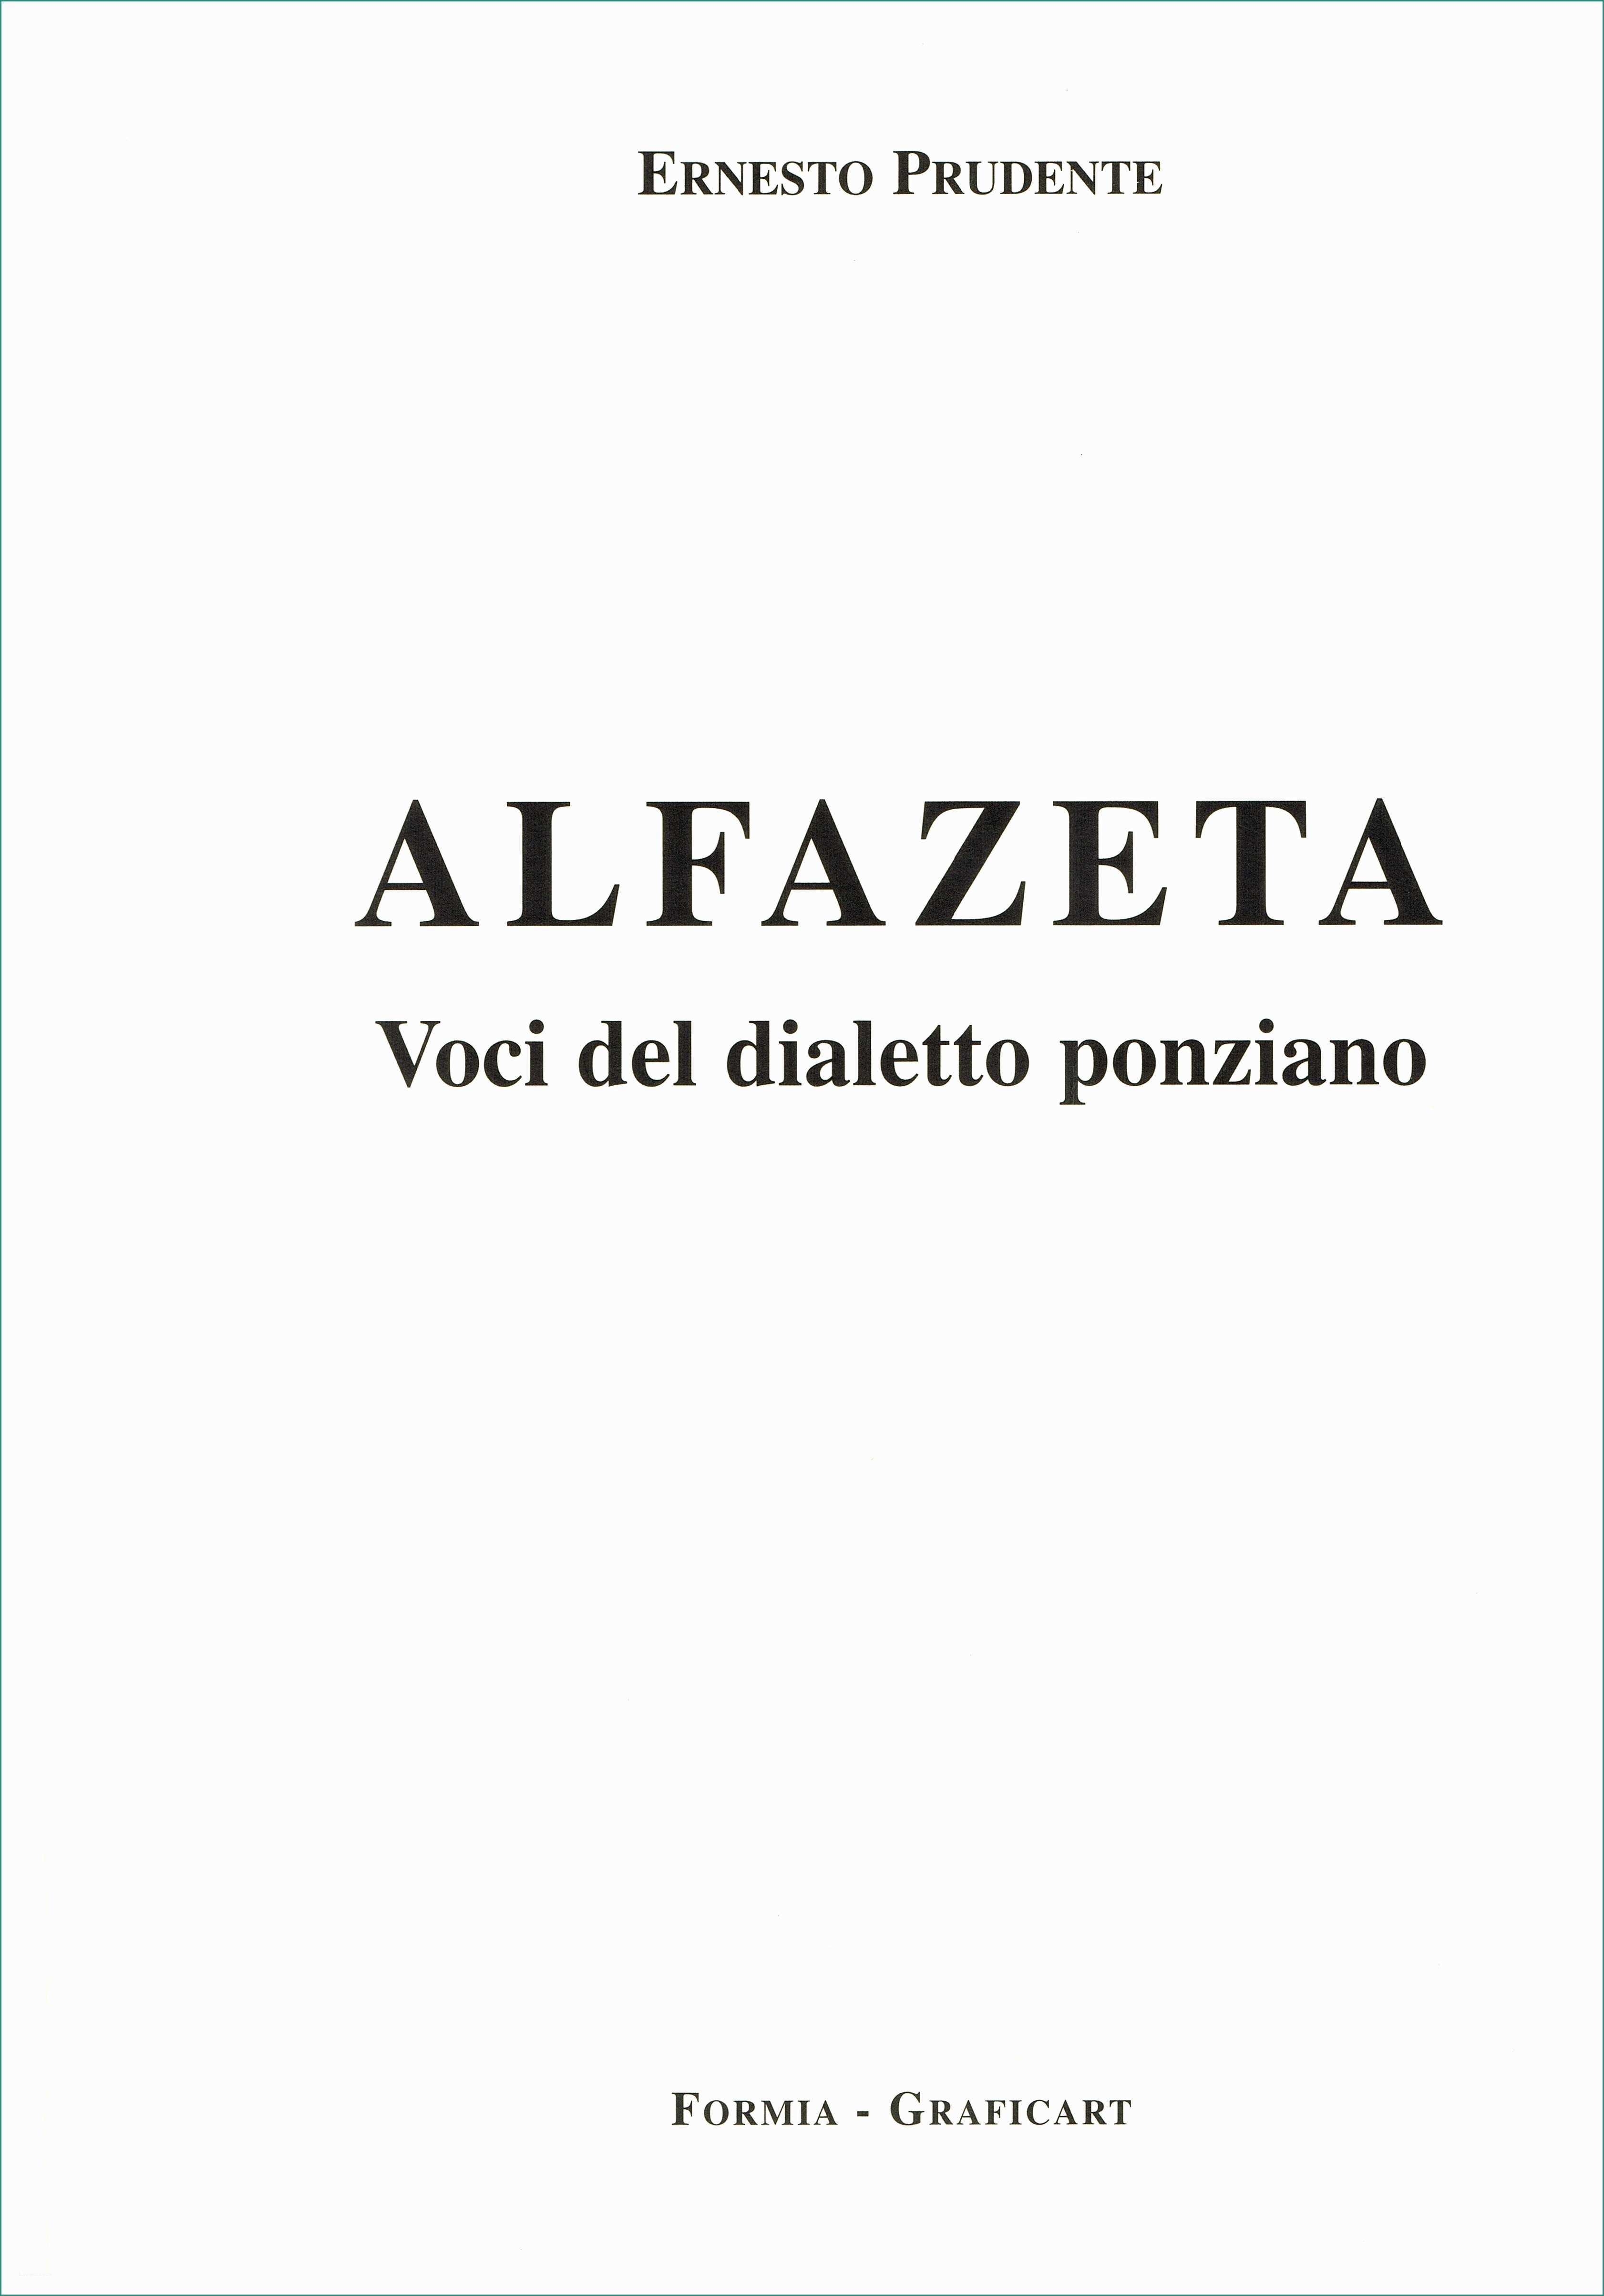 Fac Simile Preventivo Lavori E Alfazeta” Voci Del Dialetto Ponziano 2 Ponza Racconta